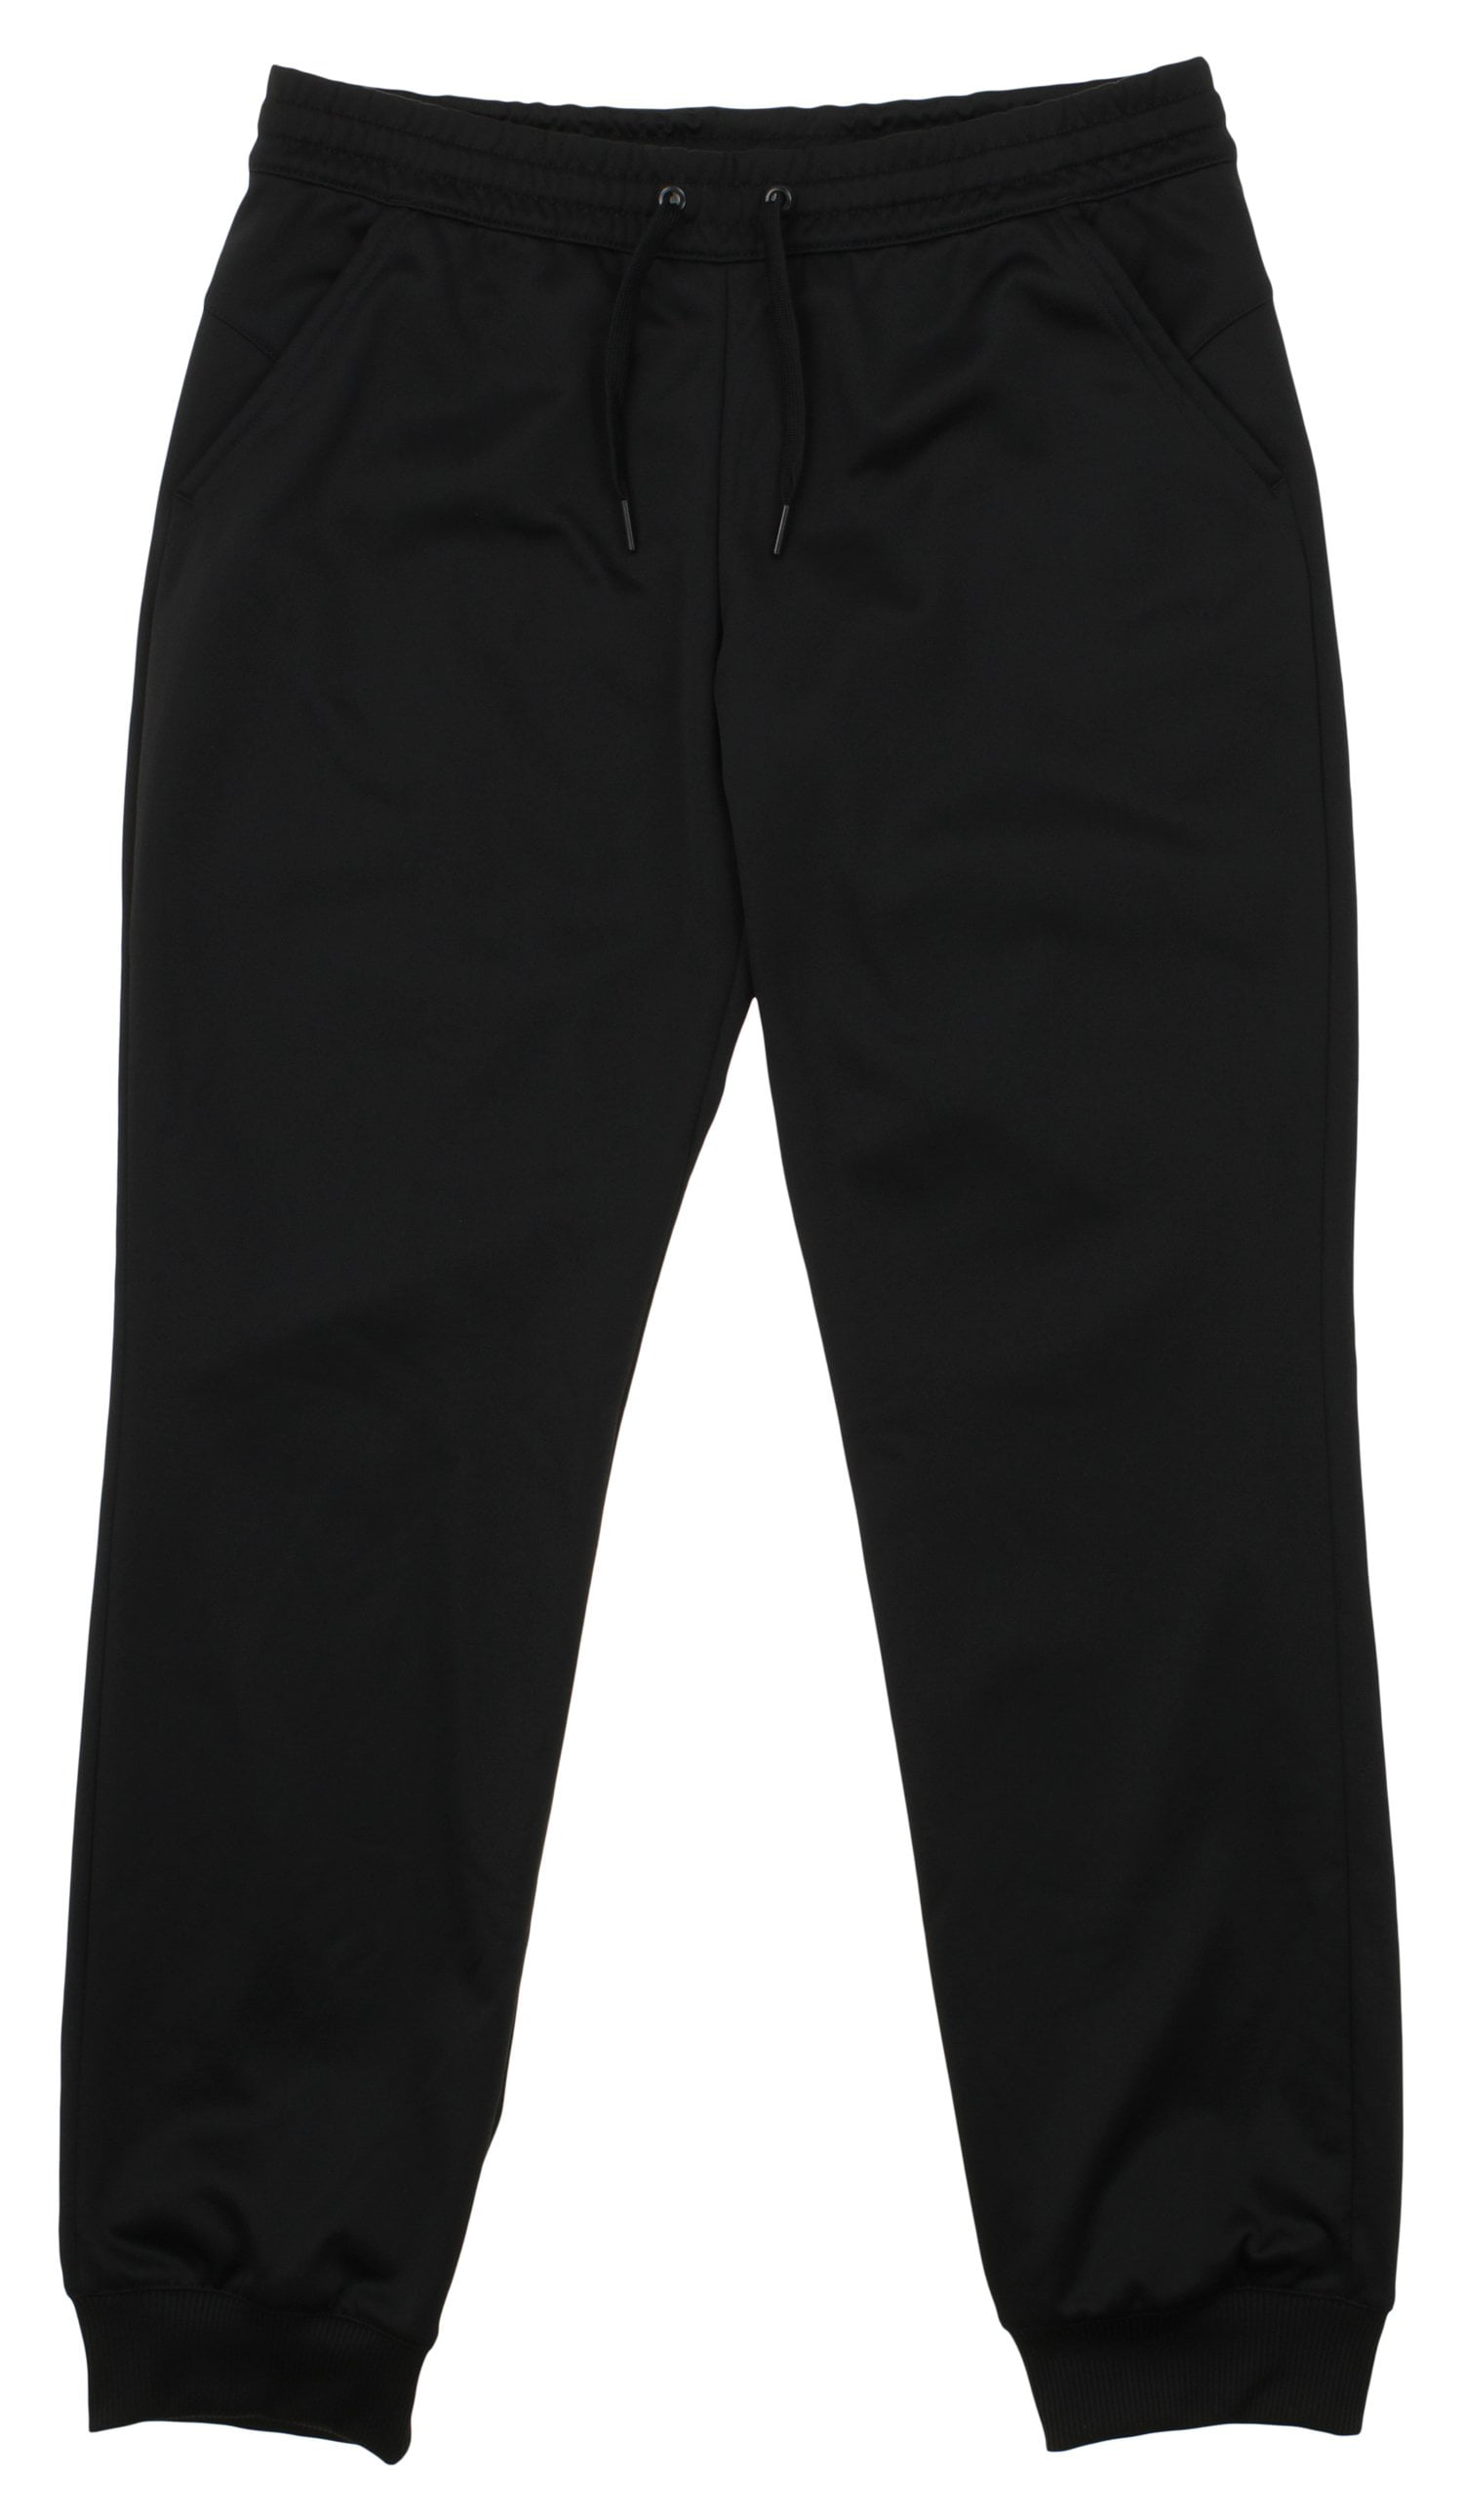 Adidas Men's Fleece Jogger Pants, 2 Color Options - Walmart.com